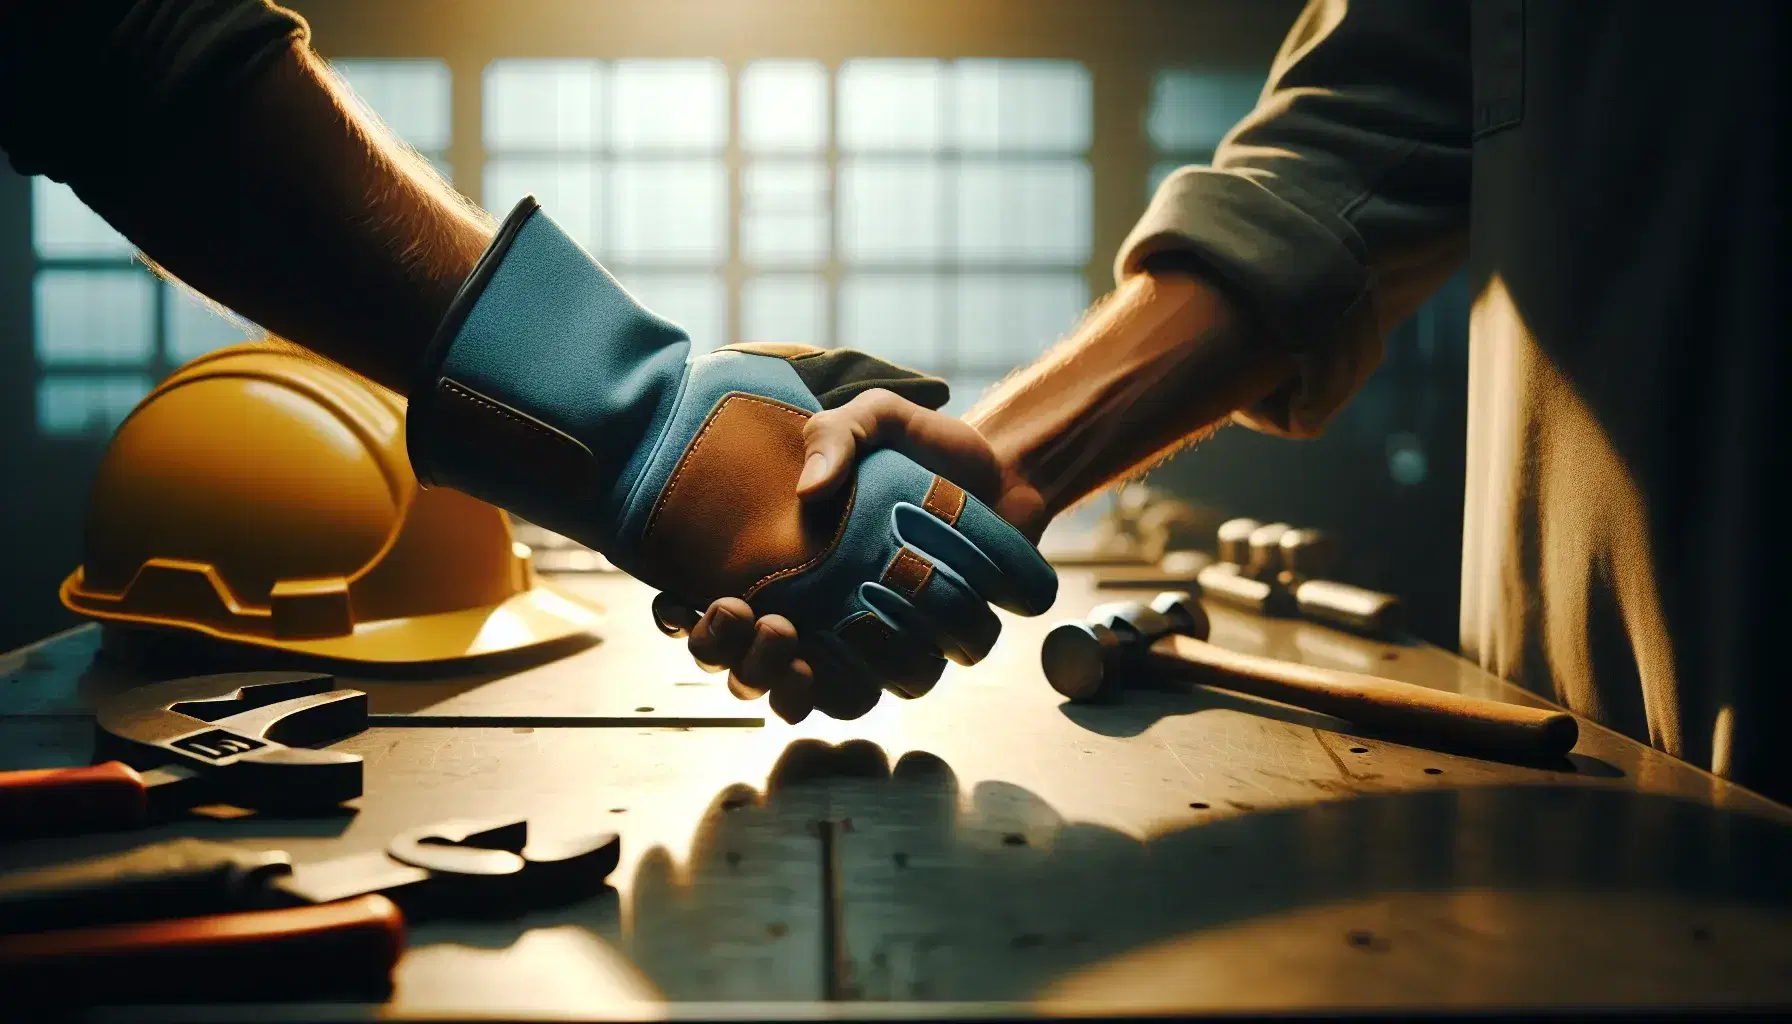 Apretón de manos entre una persona con guante de seguridad azul y otra sin guante, simbolizando acuerdo en entorno industrial con cascos y herramientas de fondo.